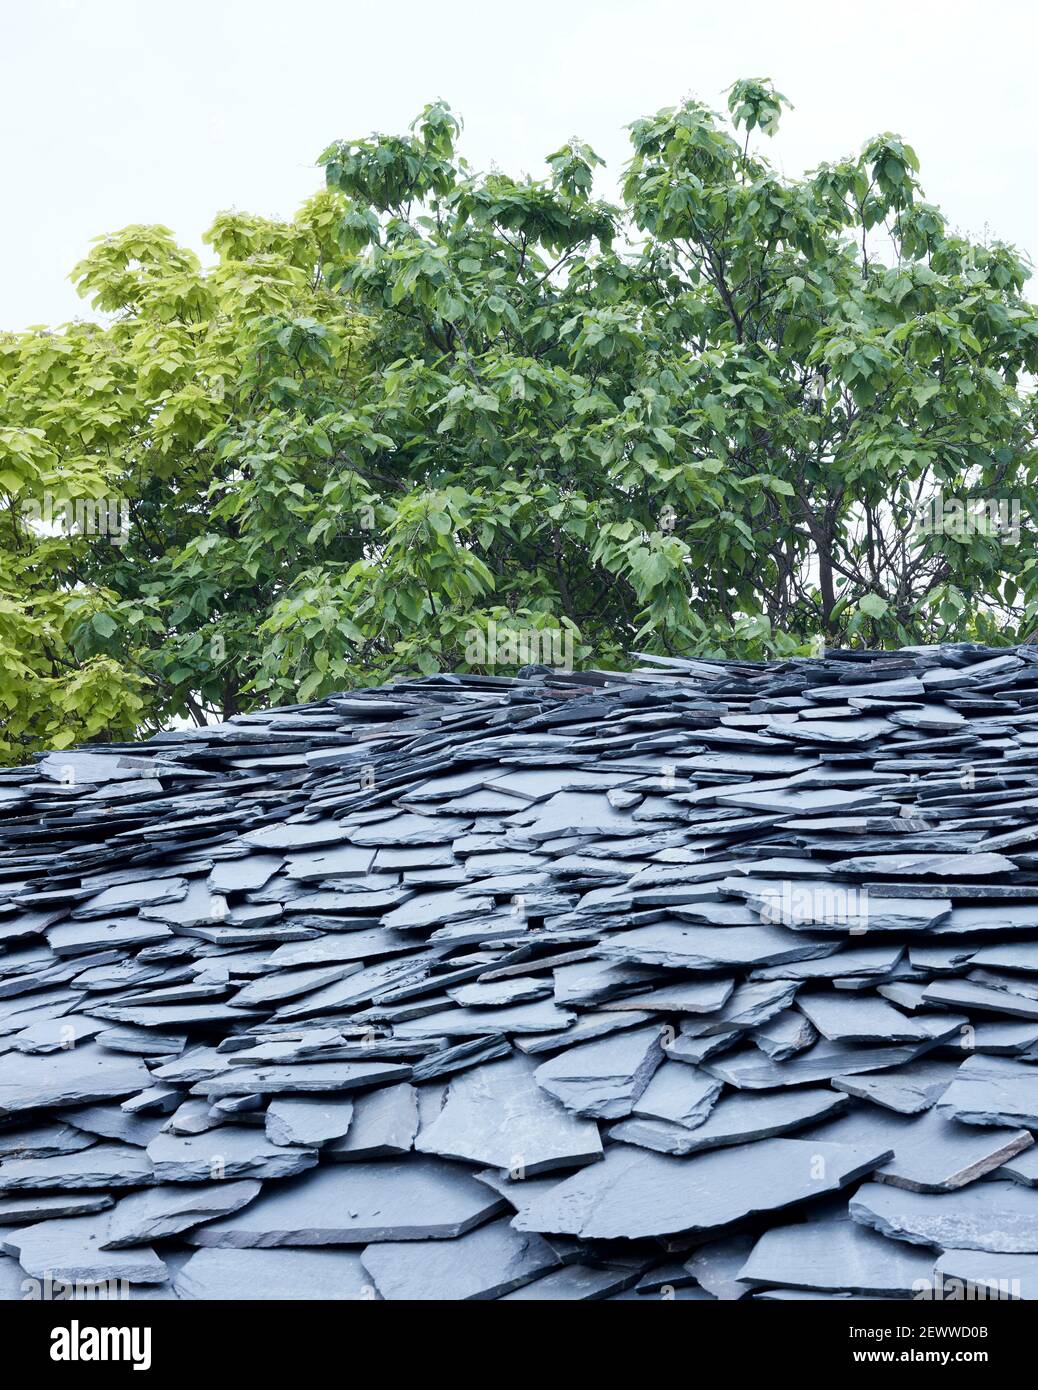 Dettagli del tetto in ardesia. Serpentina Pavilion 2019, LONDRA, Regno Unito. Architetto: Junya Ishigami , 2021. Foto Stock